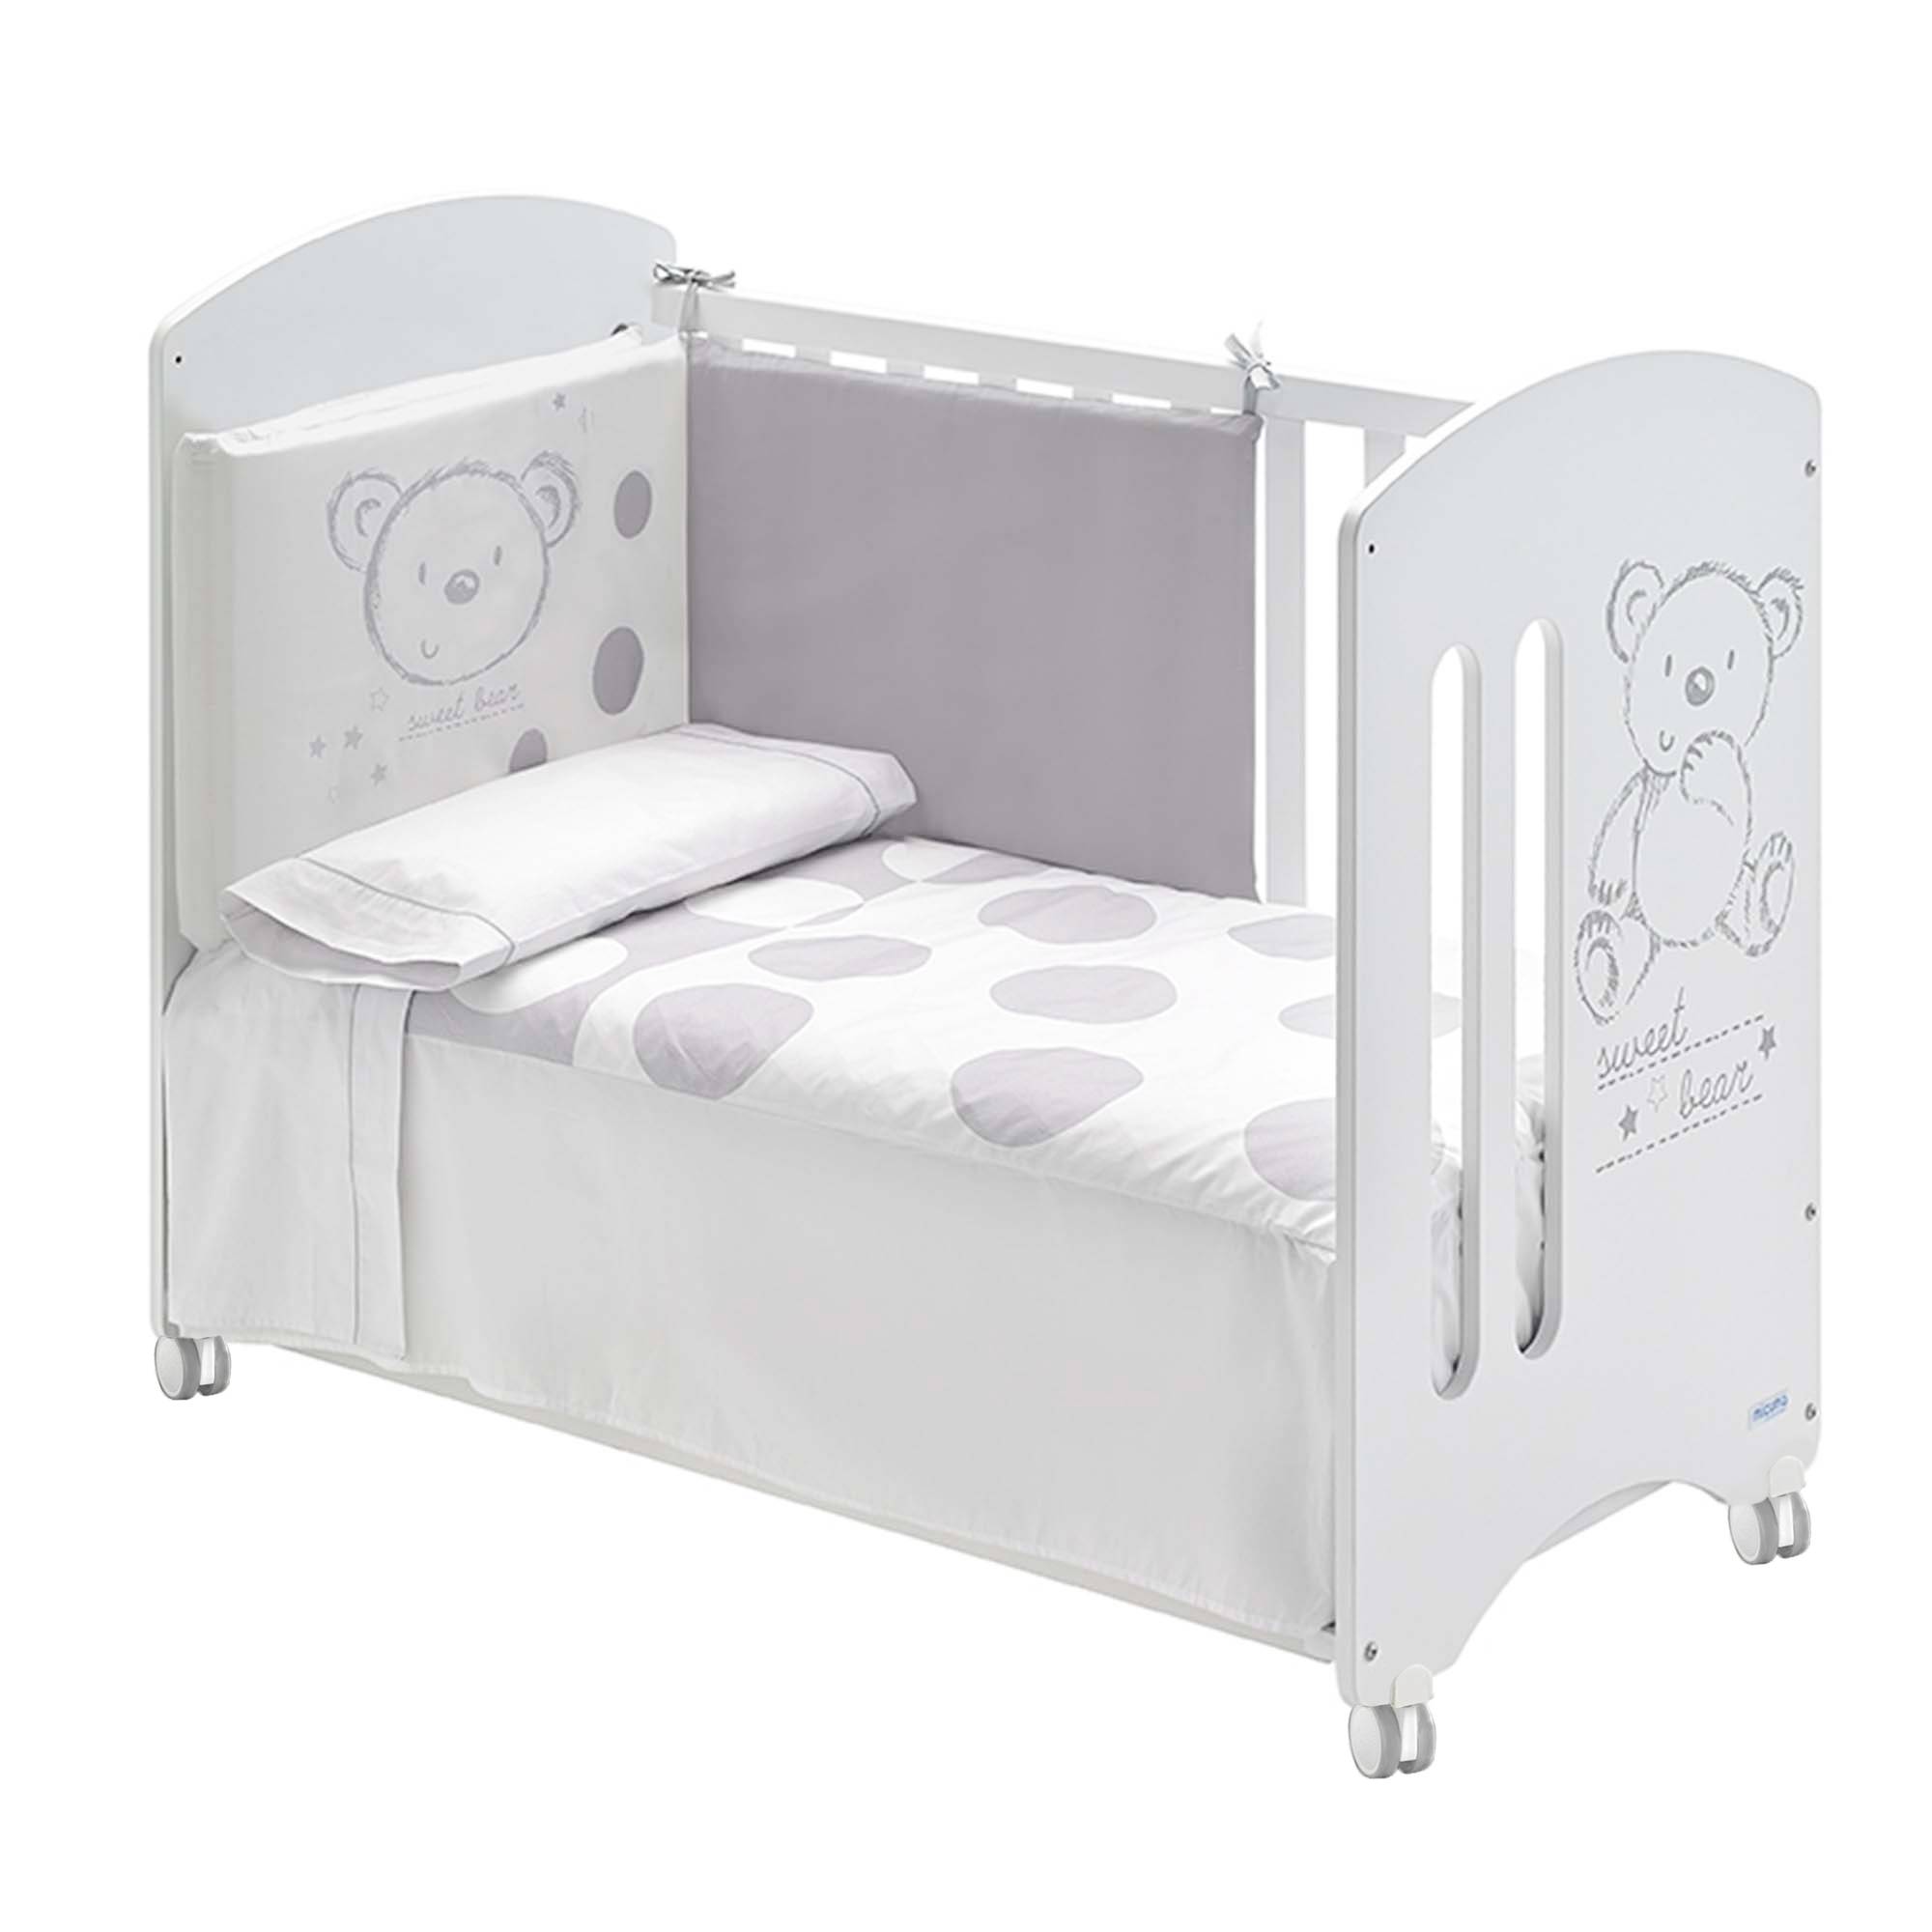 2 lits bébé 60x120 cm Copito avec le kit jumeaux complet Micuna